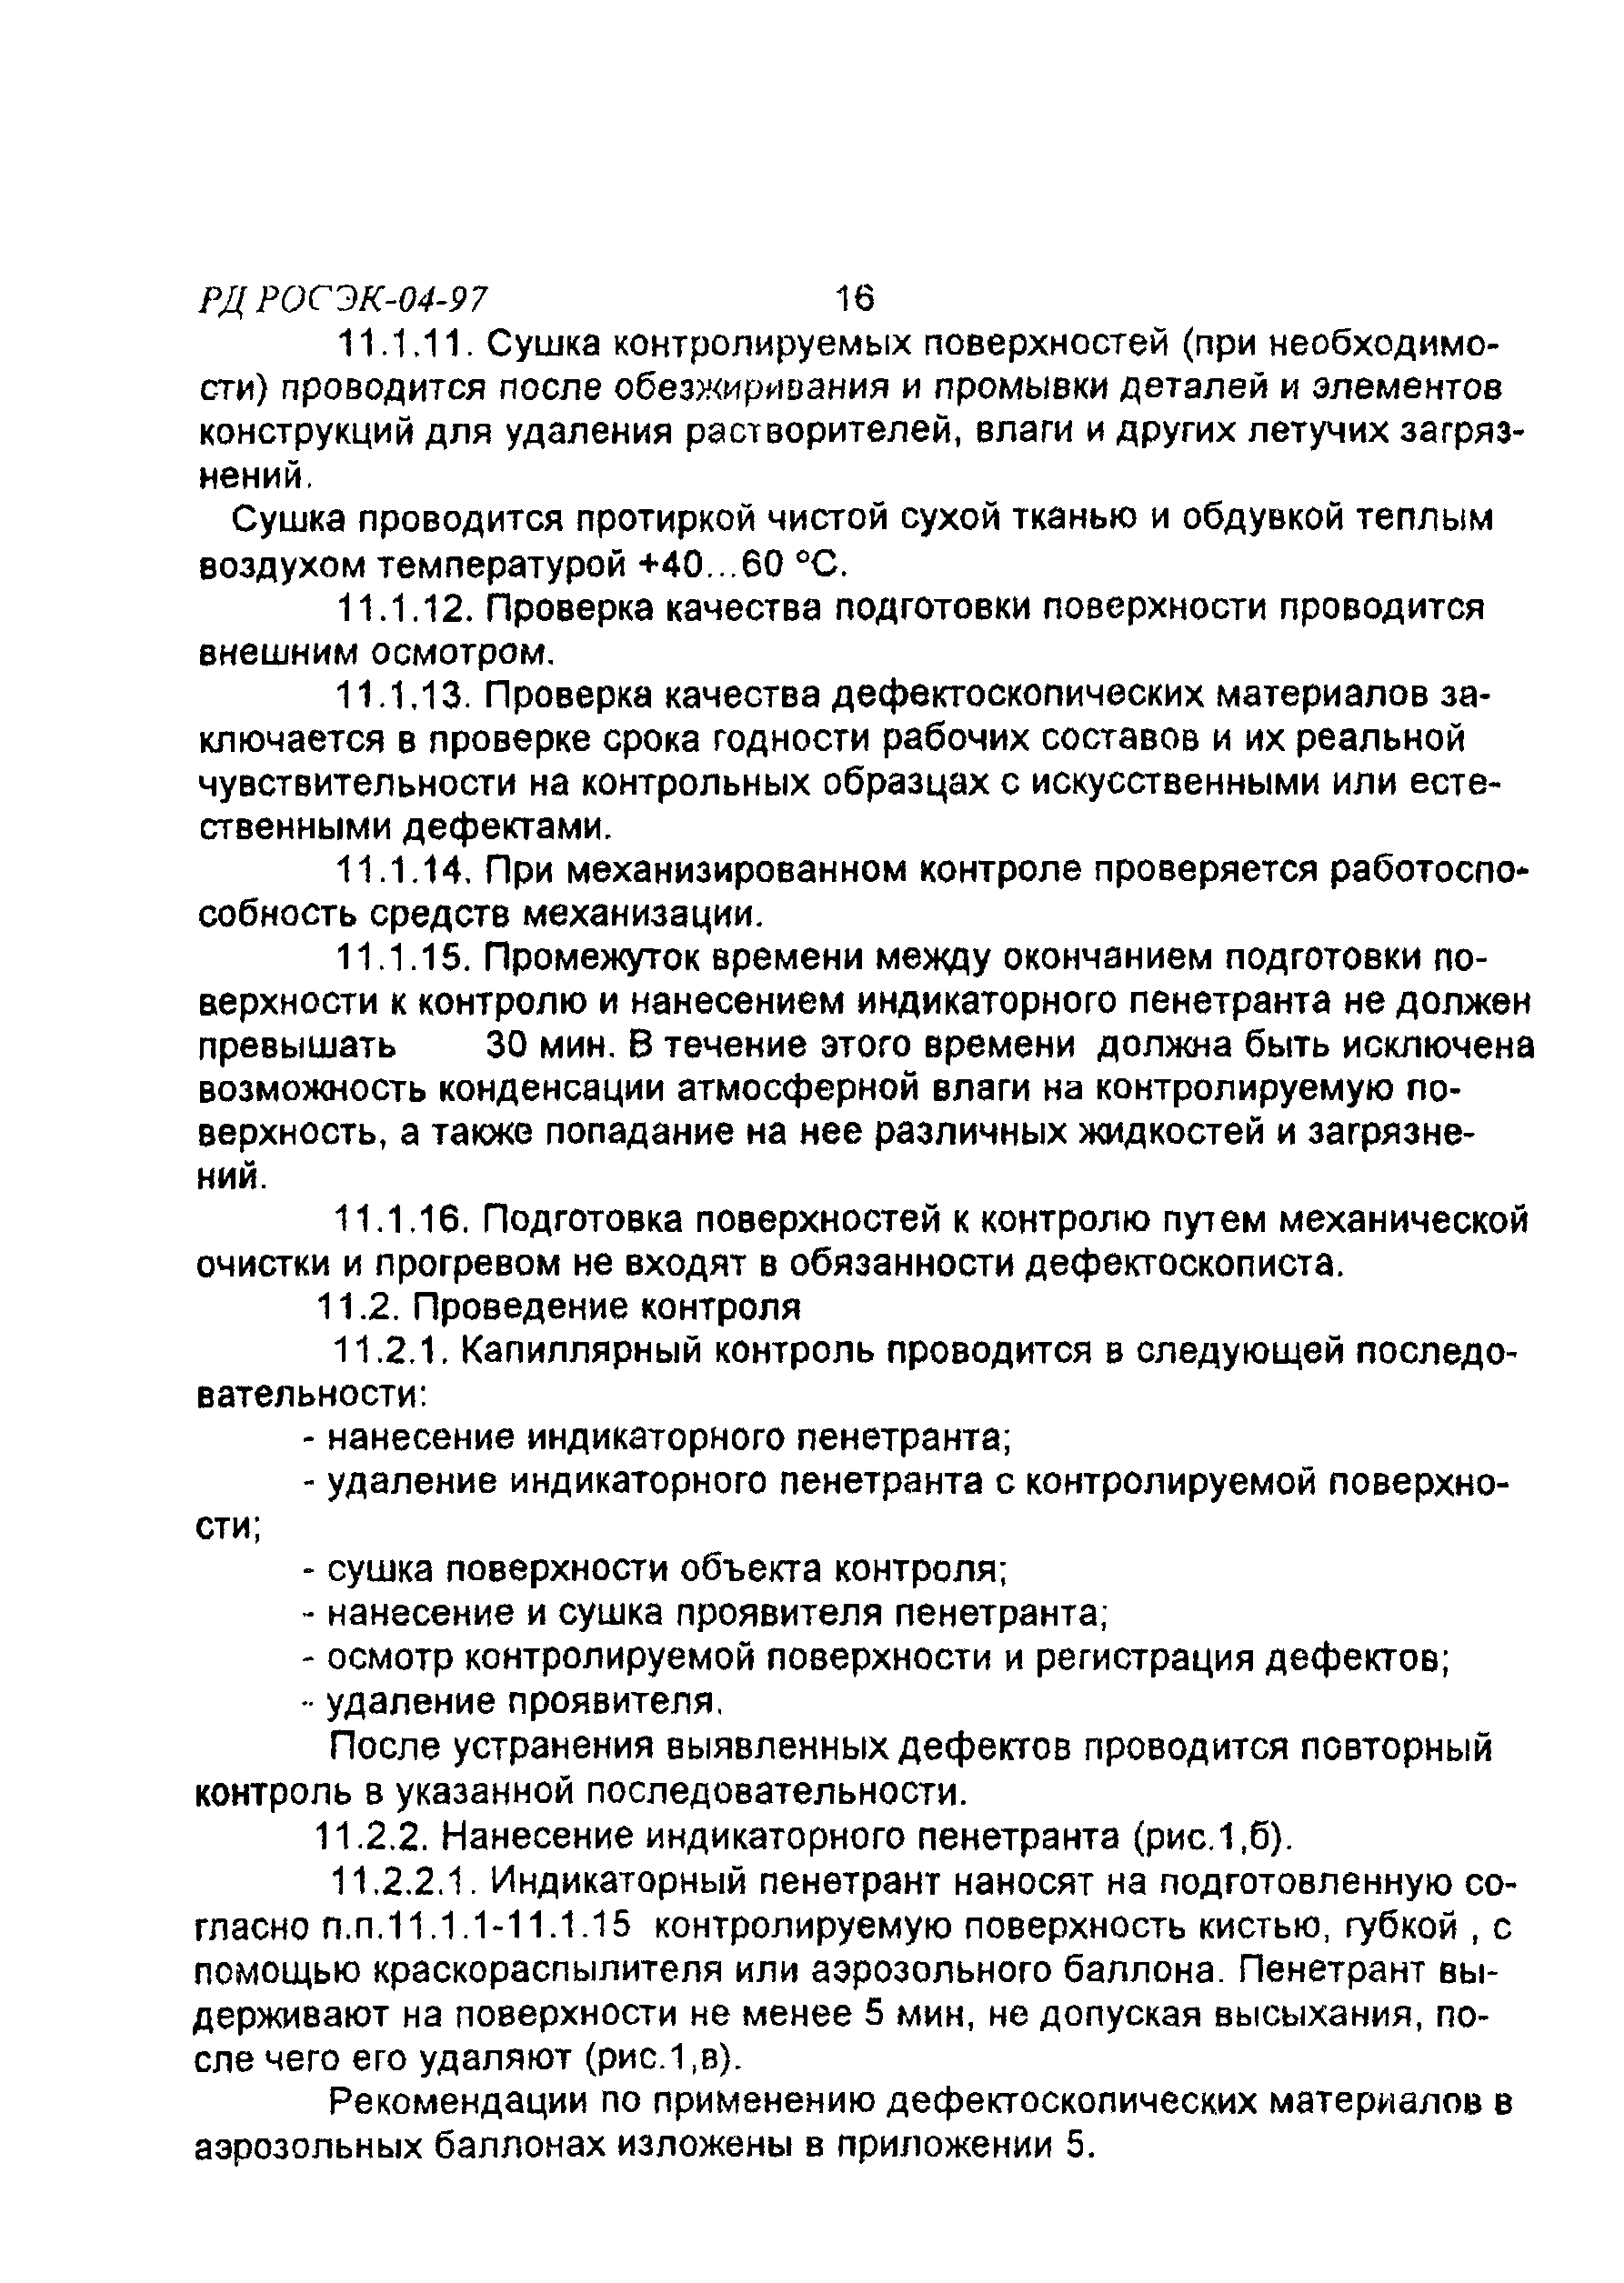 РД РОСЭК 004-97